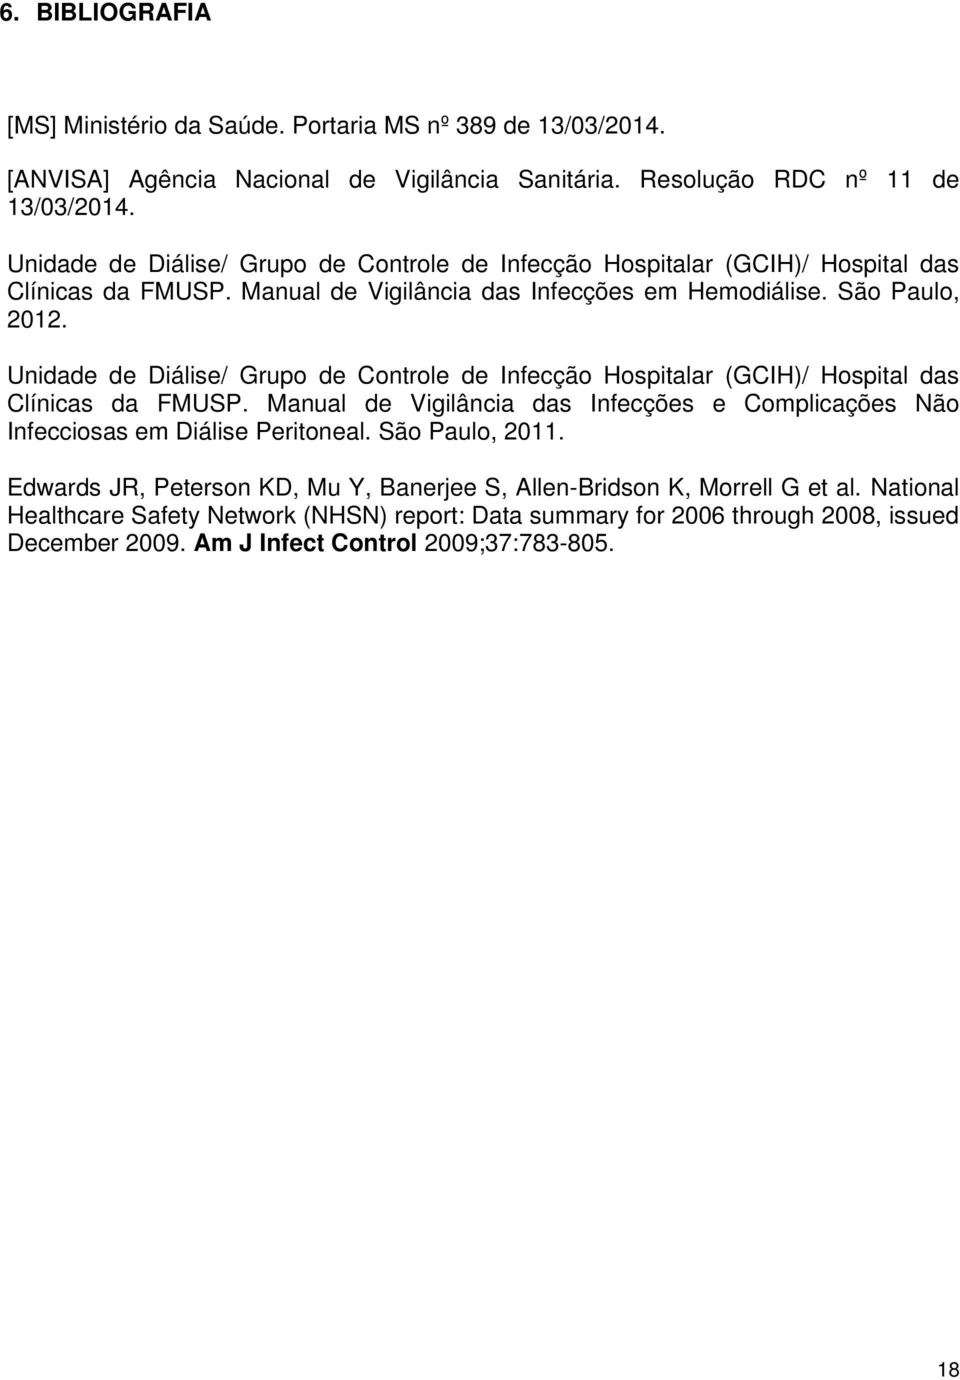 Unidade de Diálise/ Grupo de Controle de Infecção Hospitalar (GCIH)/ Hospital das Clínicas da FMUSP. Manual de Vigilância das Infecções e Complicações Não Infecciosas em Diálise Peritoneal.